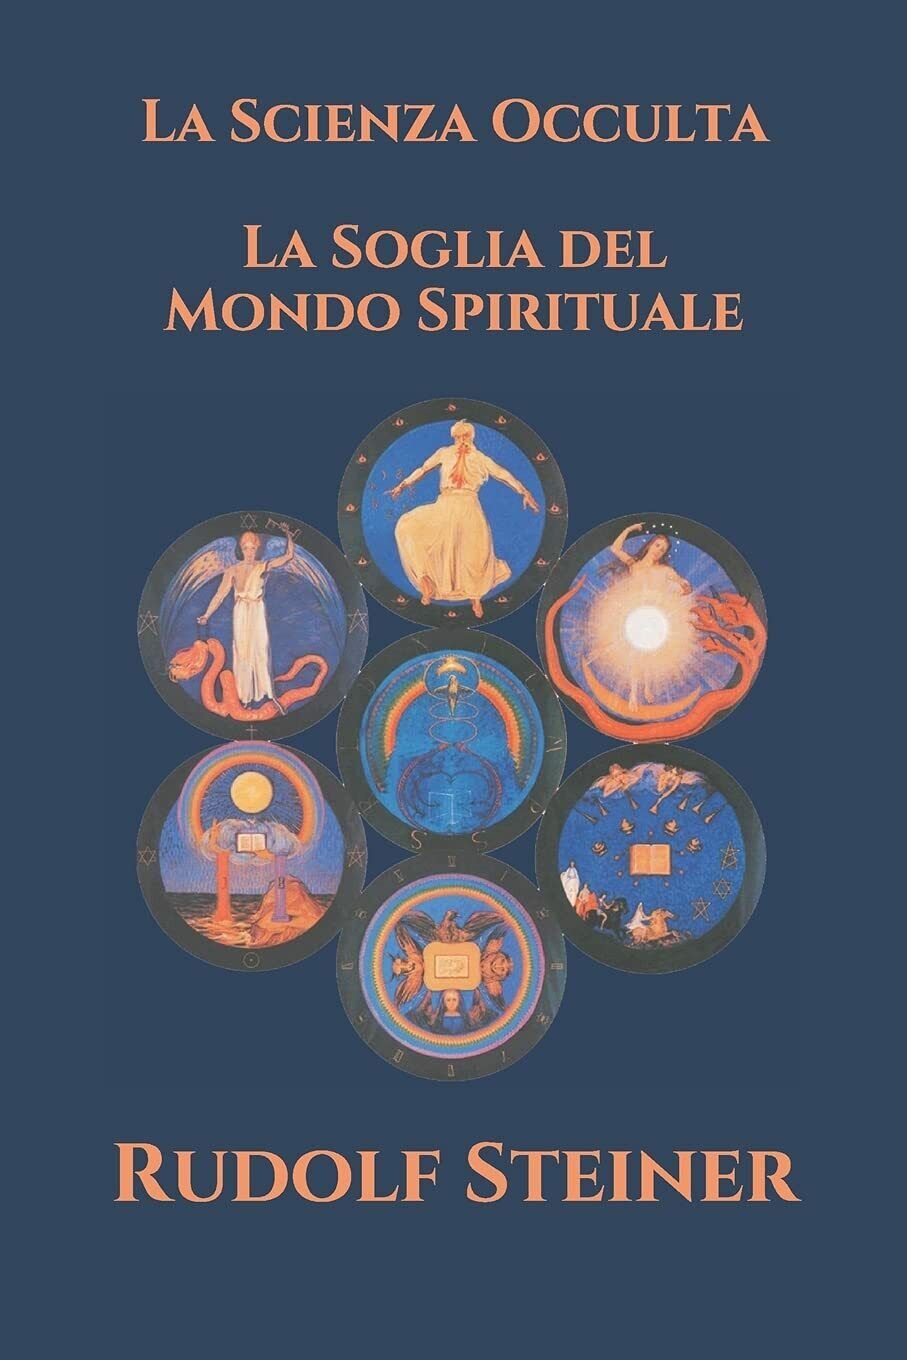 La Scienza Occulta - La Soglia del Mondo Spirituale di Rudolf Steiner,  2020,  I